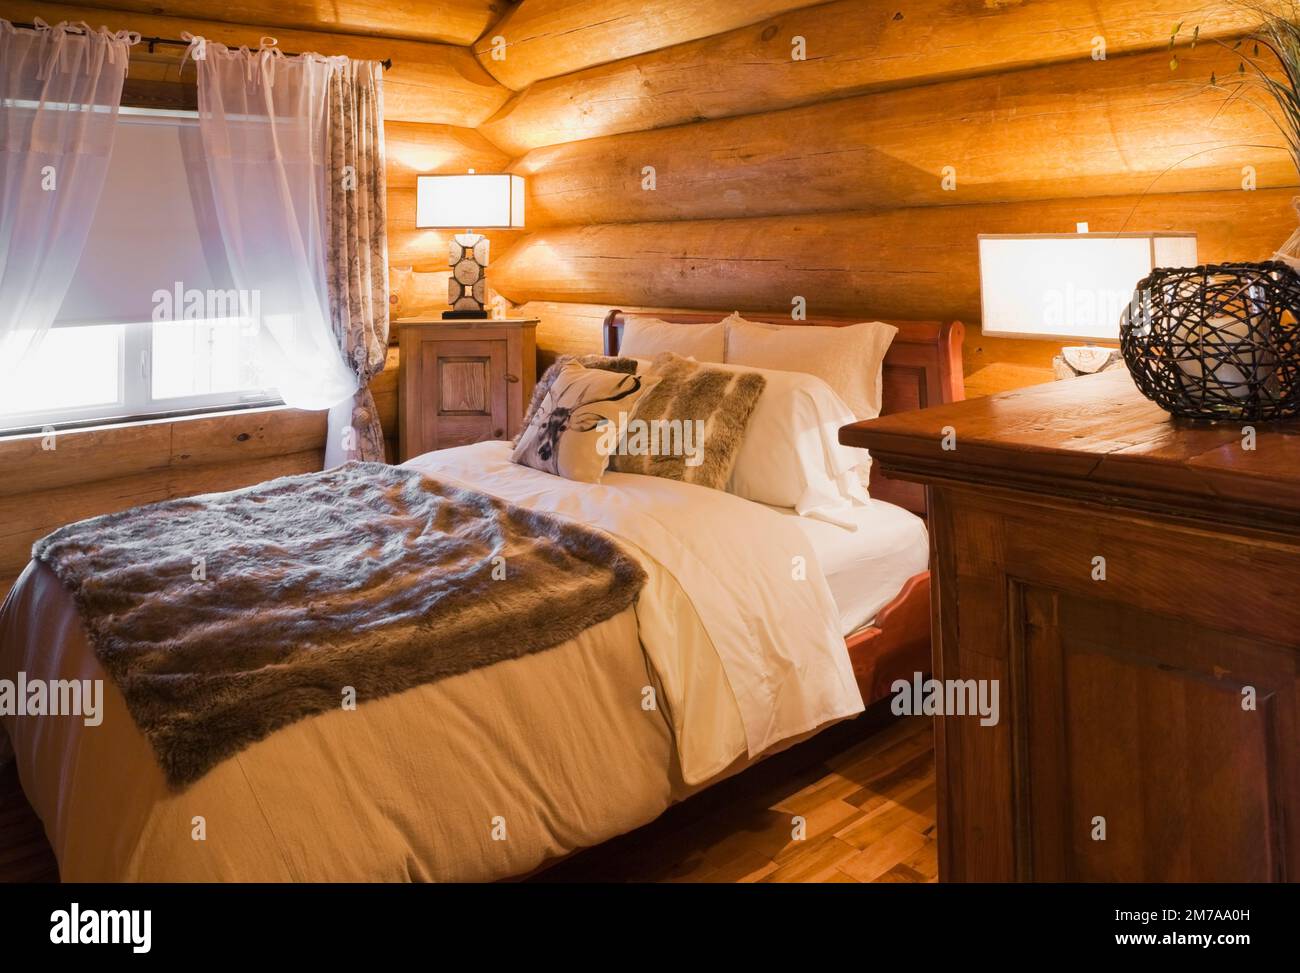 Cama queen size y mesitas de noche de madera con lámparas iluminadas en el dormitorio de invitados en la planta baja dentro de la lujosa casa de madera escandinava. Foto de stock